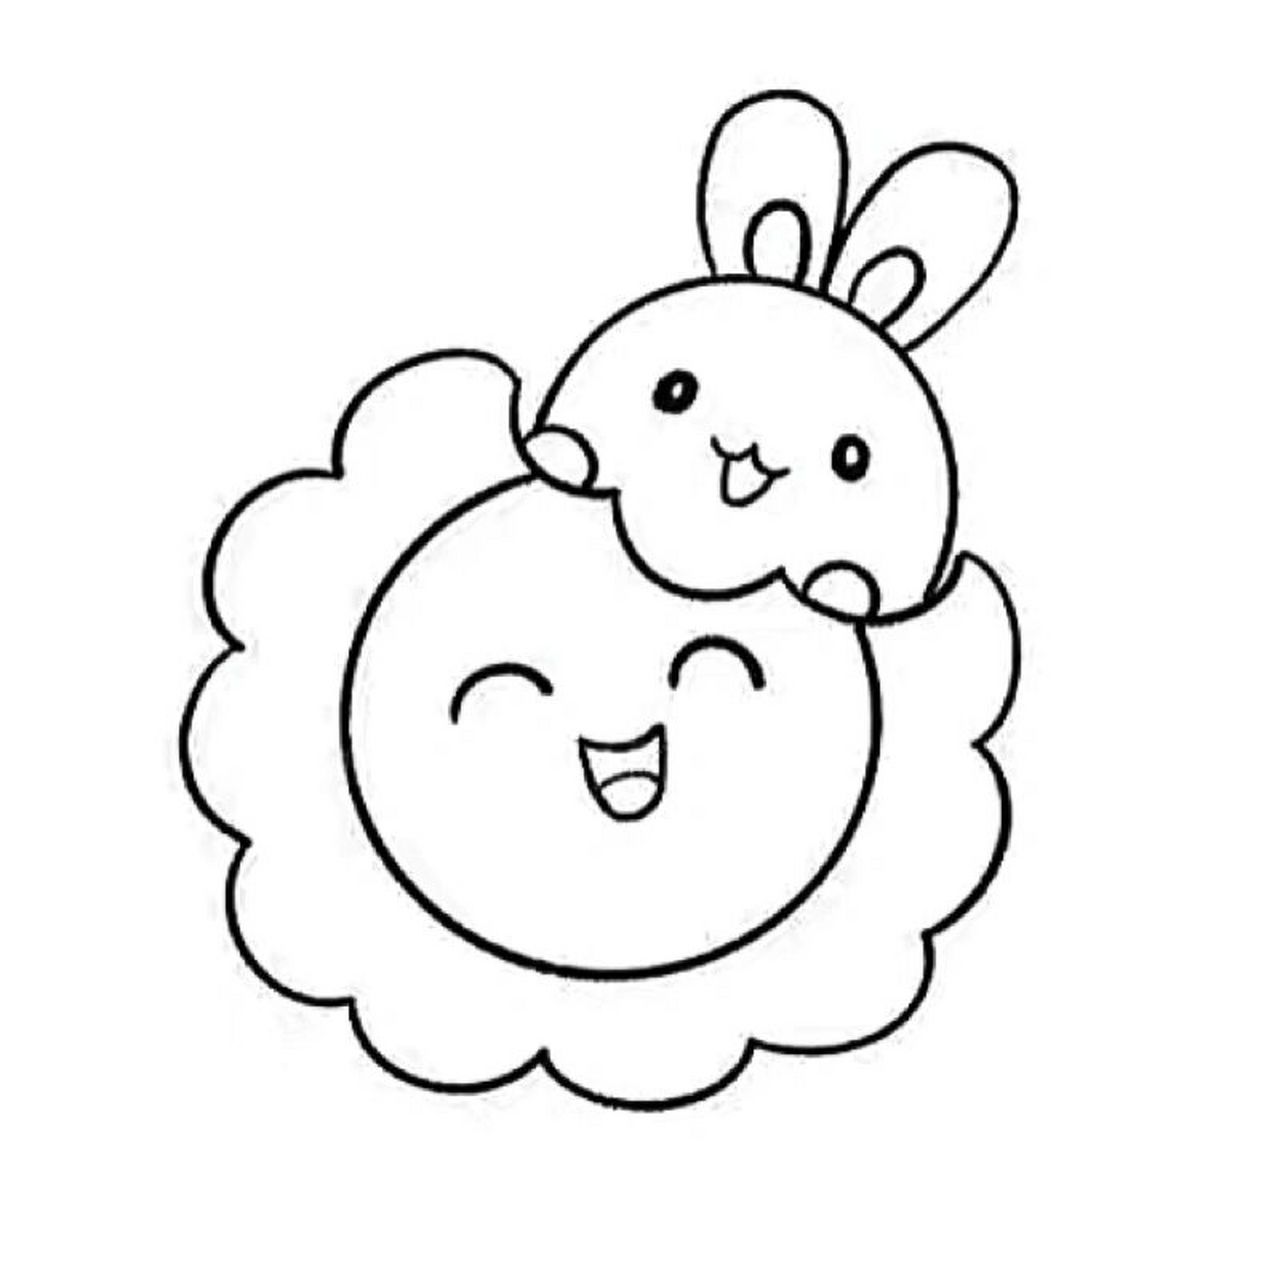 中秋节简笔画兔子图片